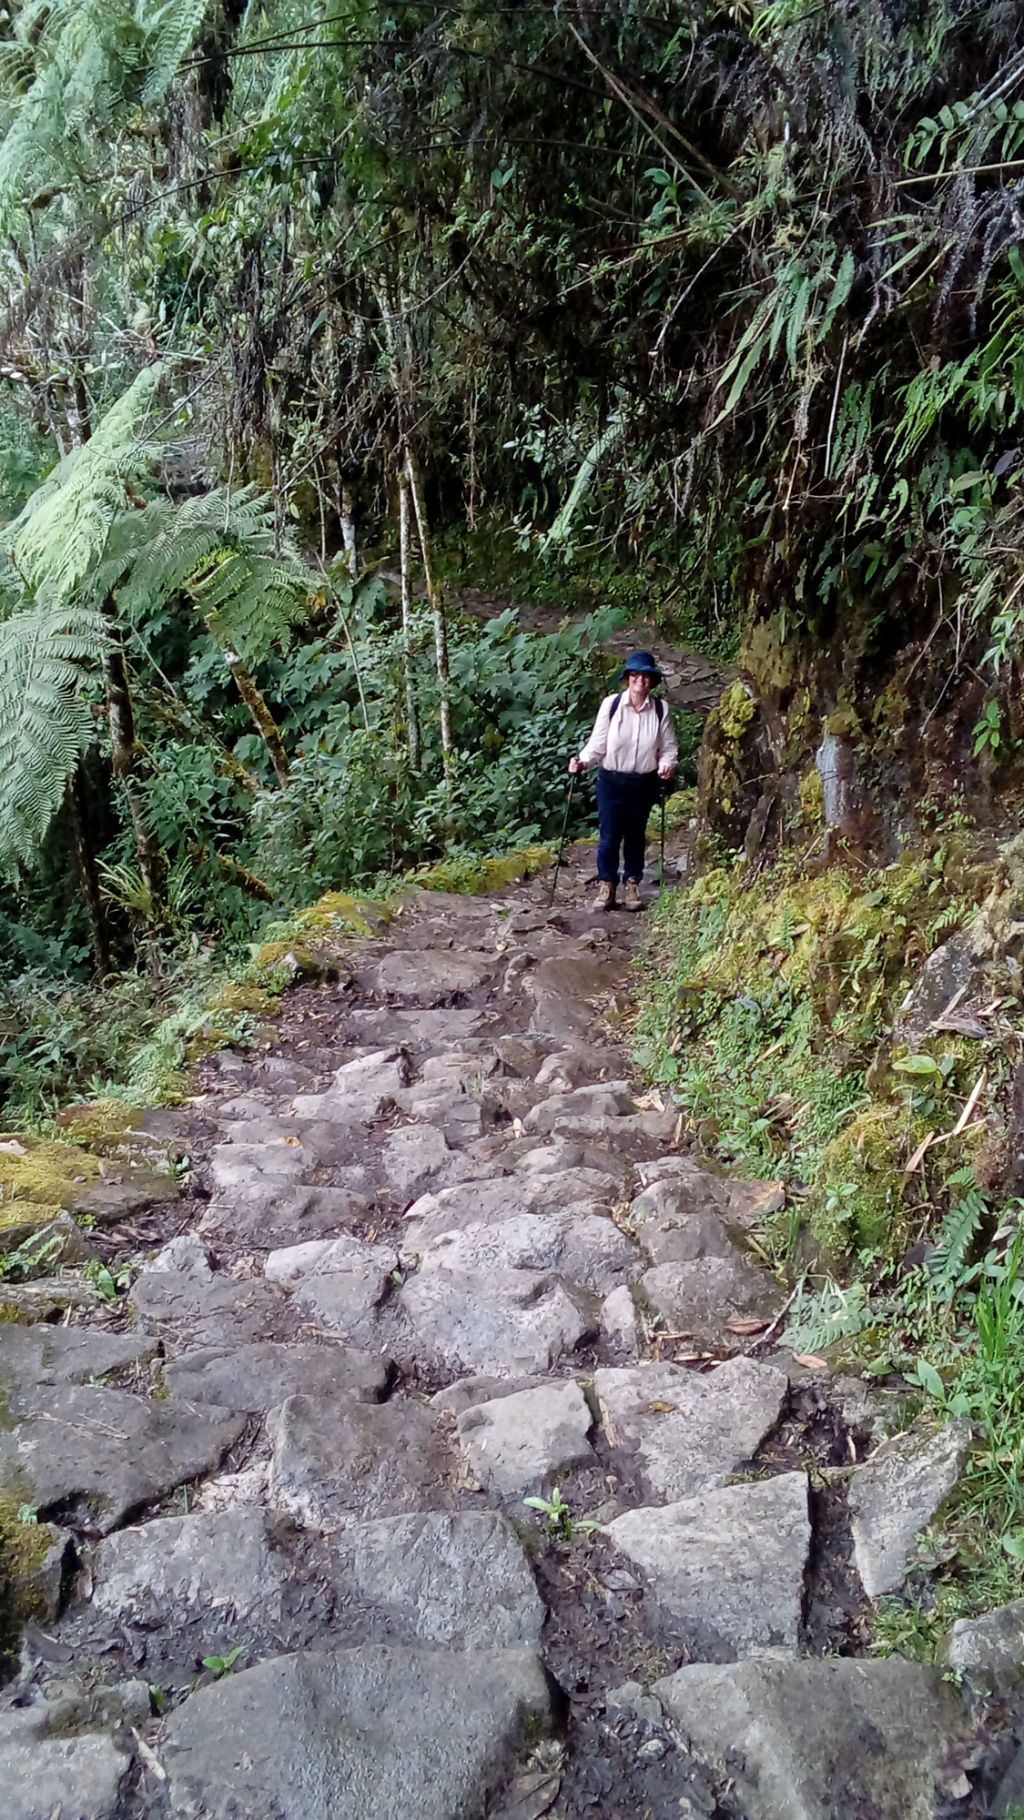 Salkantay and Inca Trail in 6 days by Elizabeth Gordon - Salkantay and Inca Trail in 6 days by Elizabeth Gordon